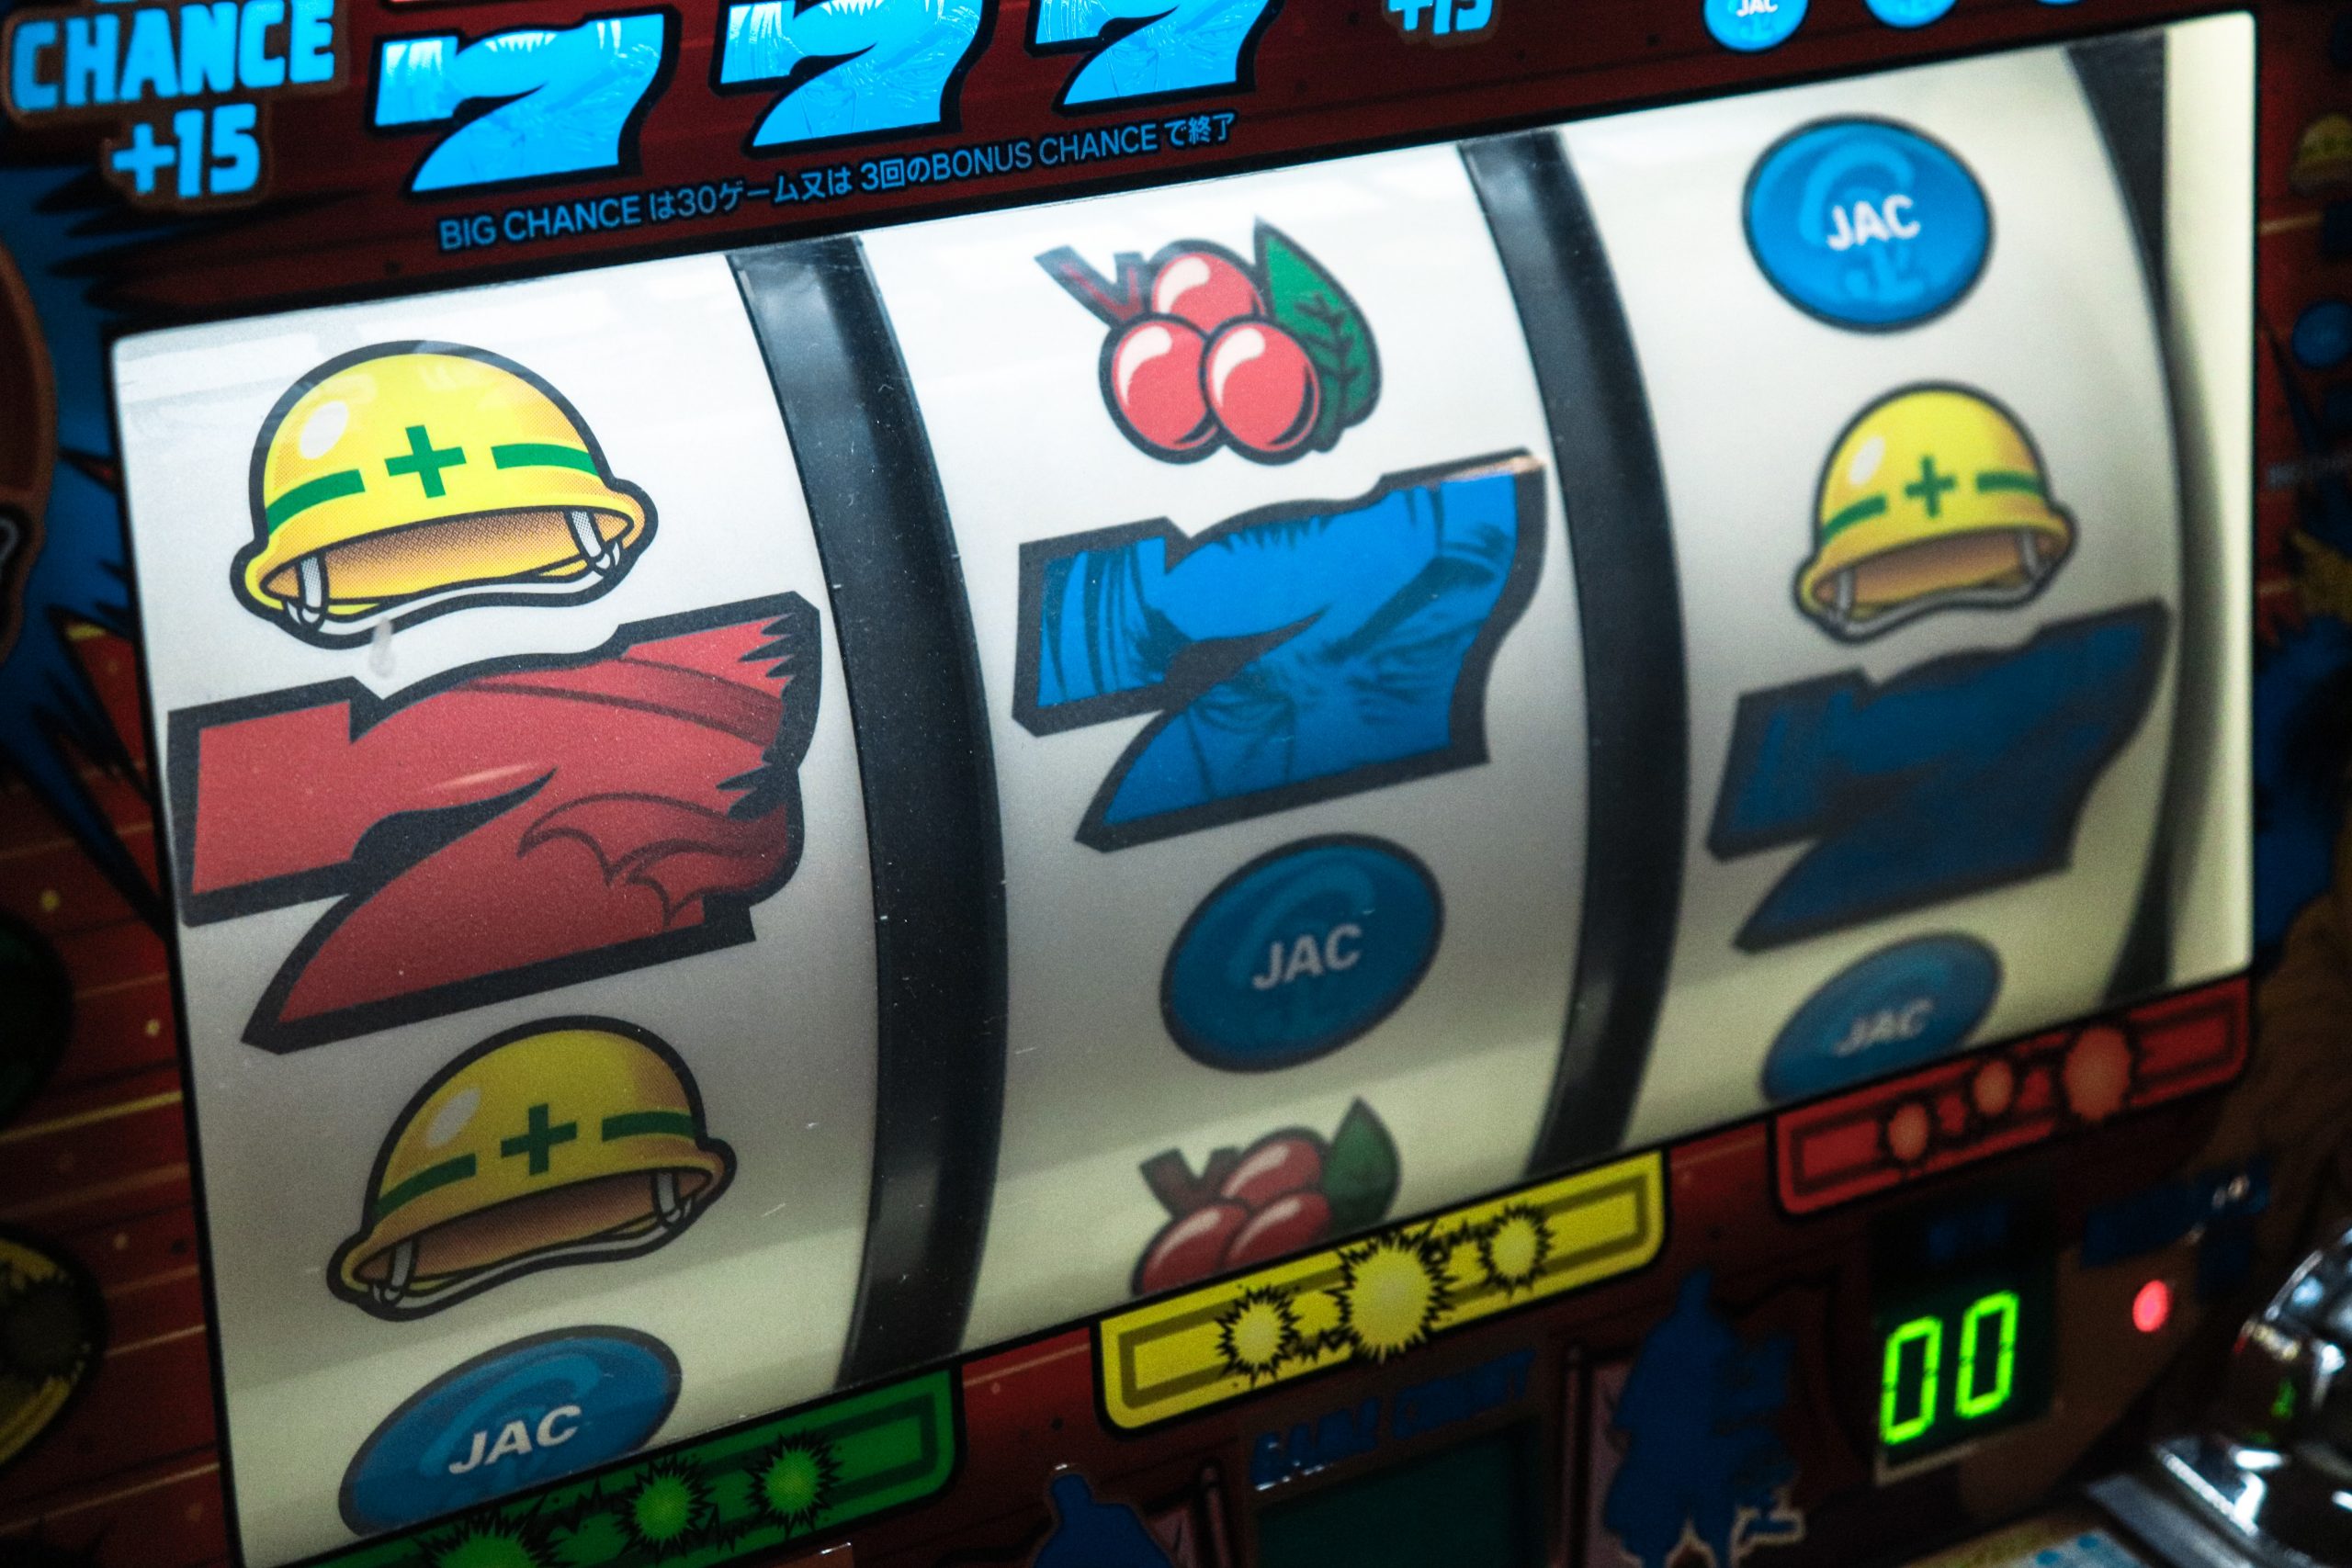  игровые автоматы гаминатор играть онлайн бесплатно